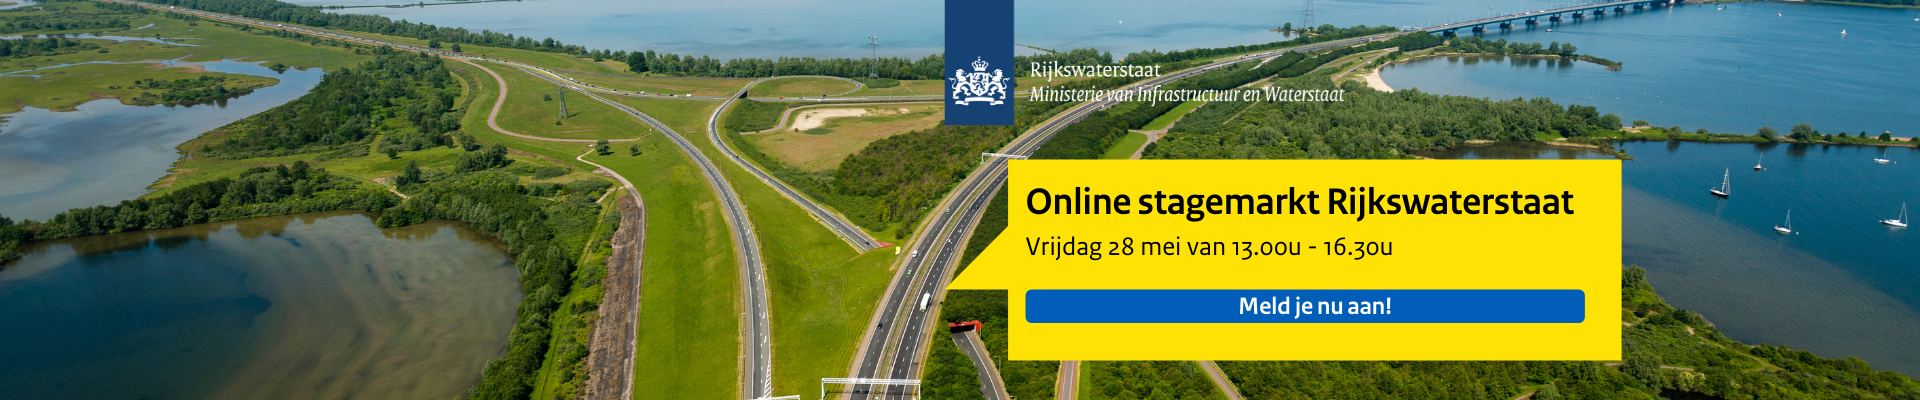 Online stagemarkt Rijkswaterstaat